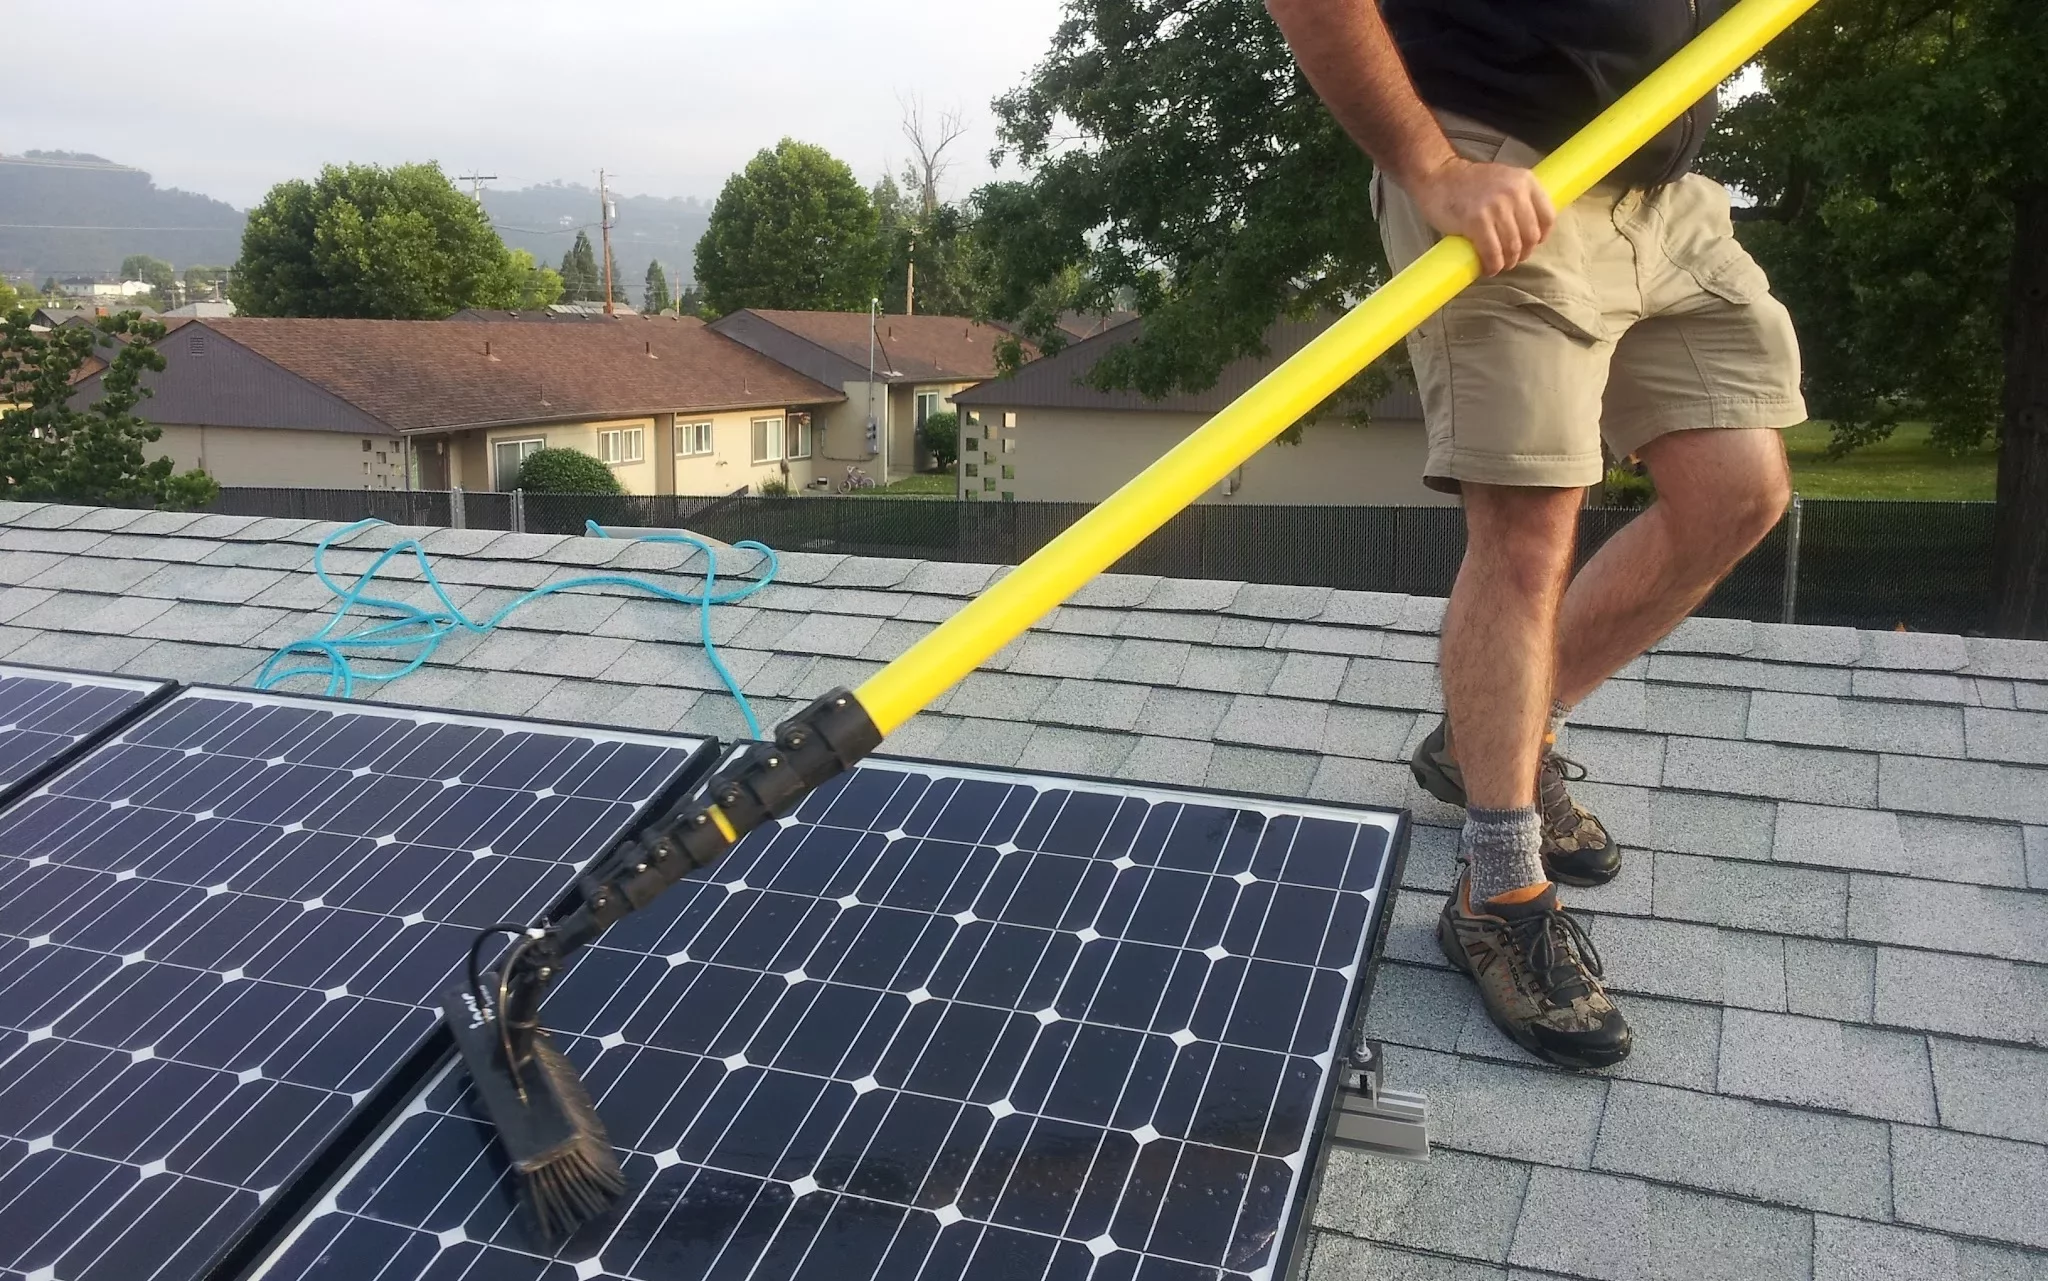 Зачем солнечные батареи на крыше каждого дома?